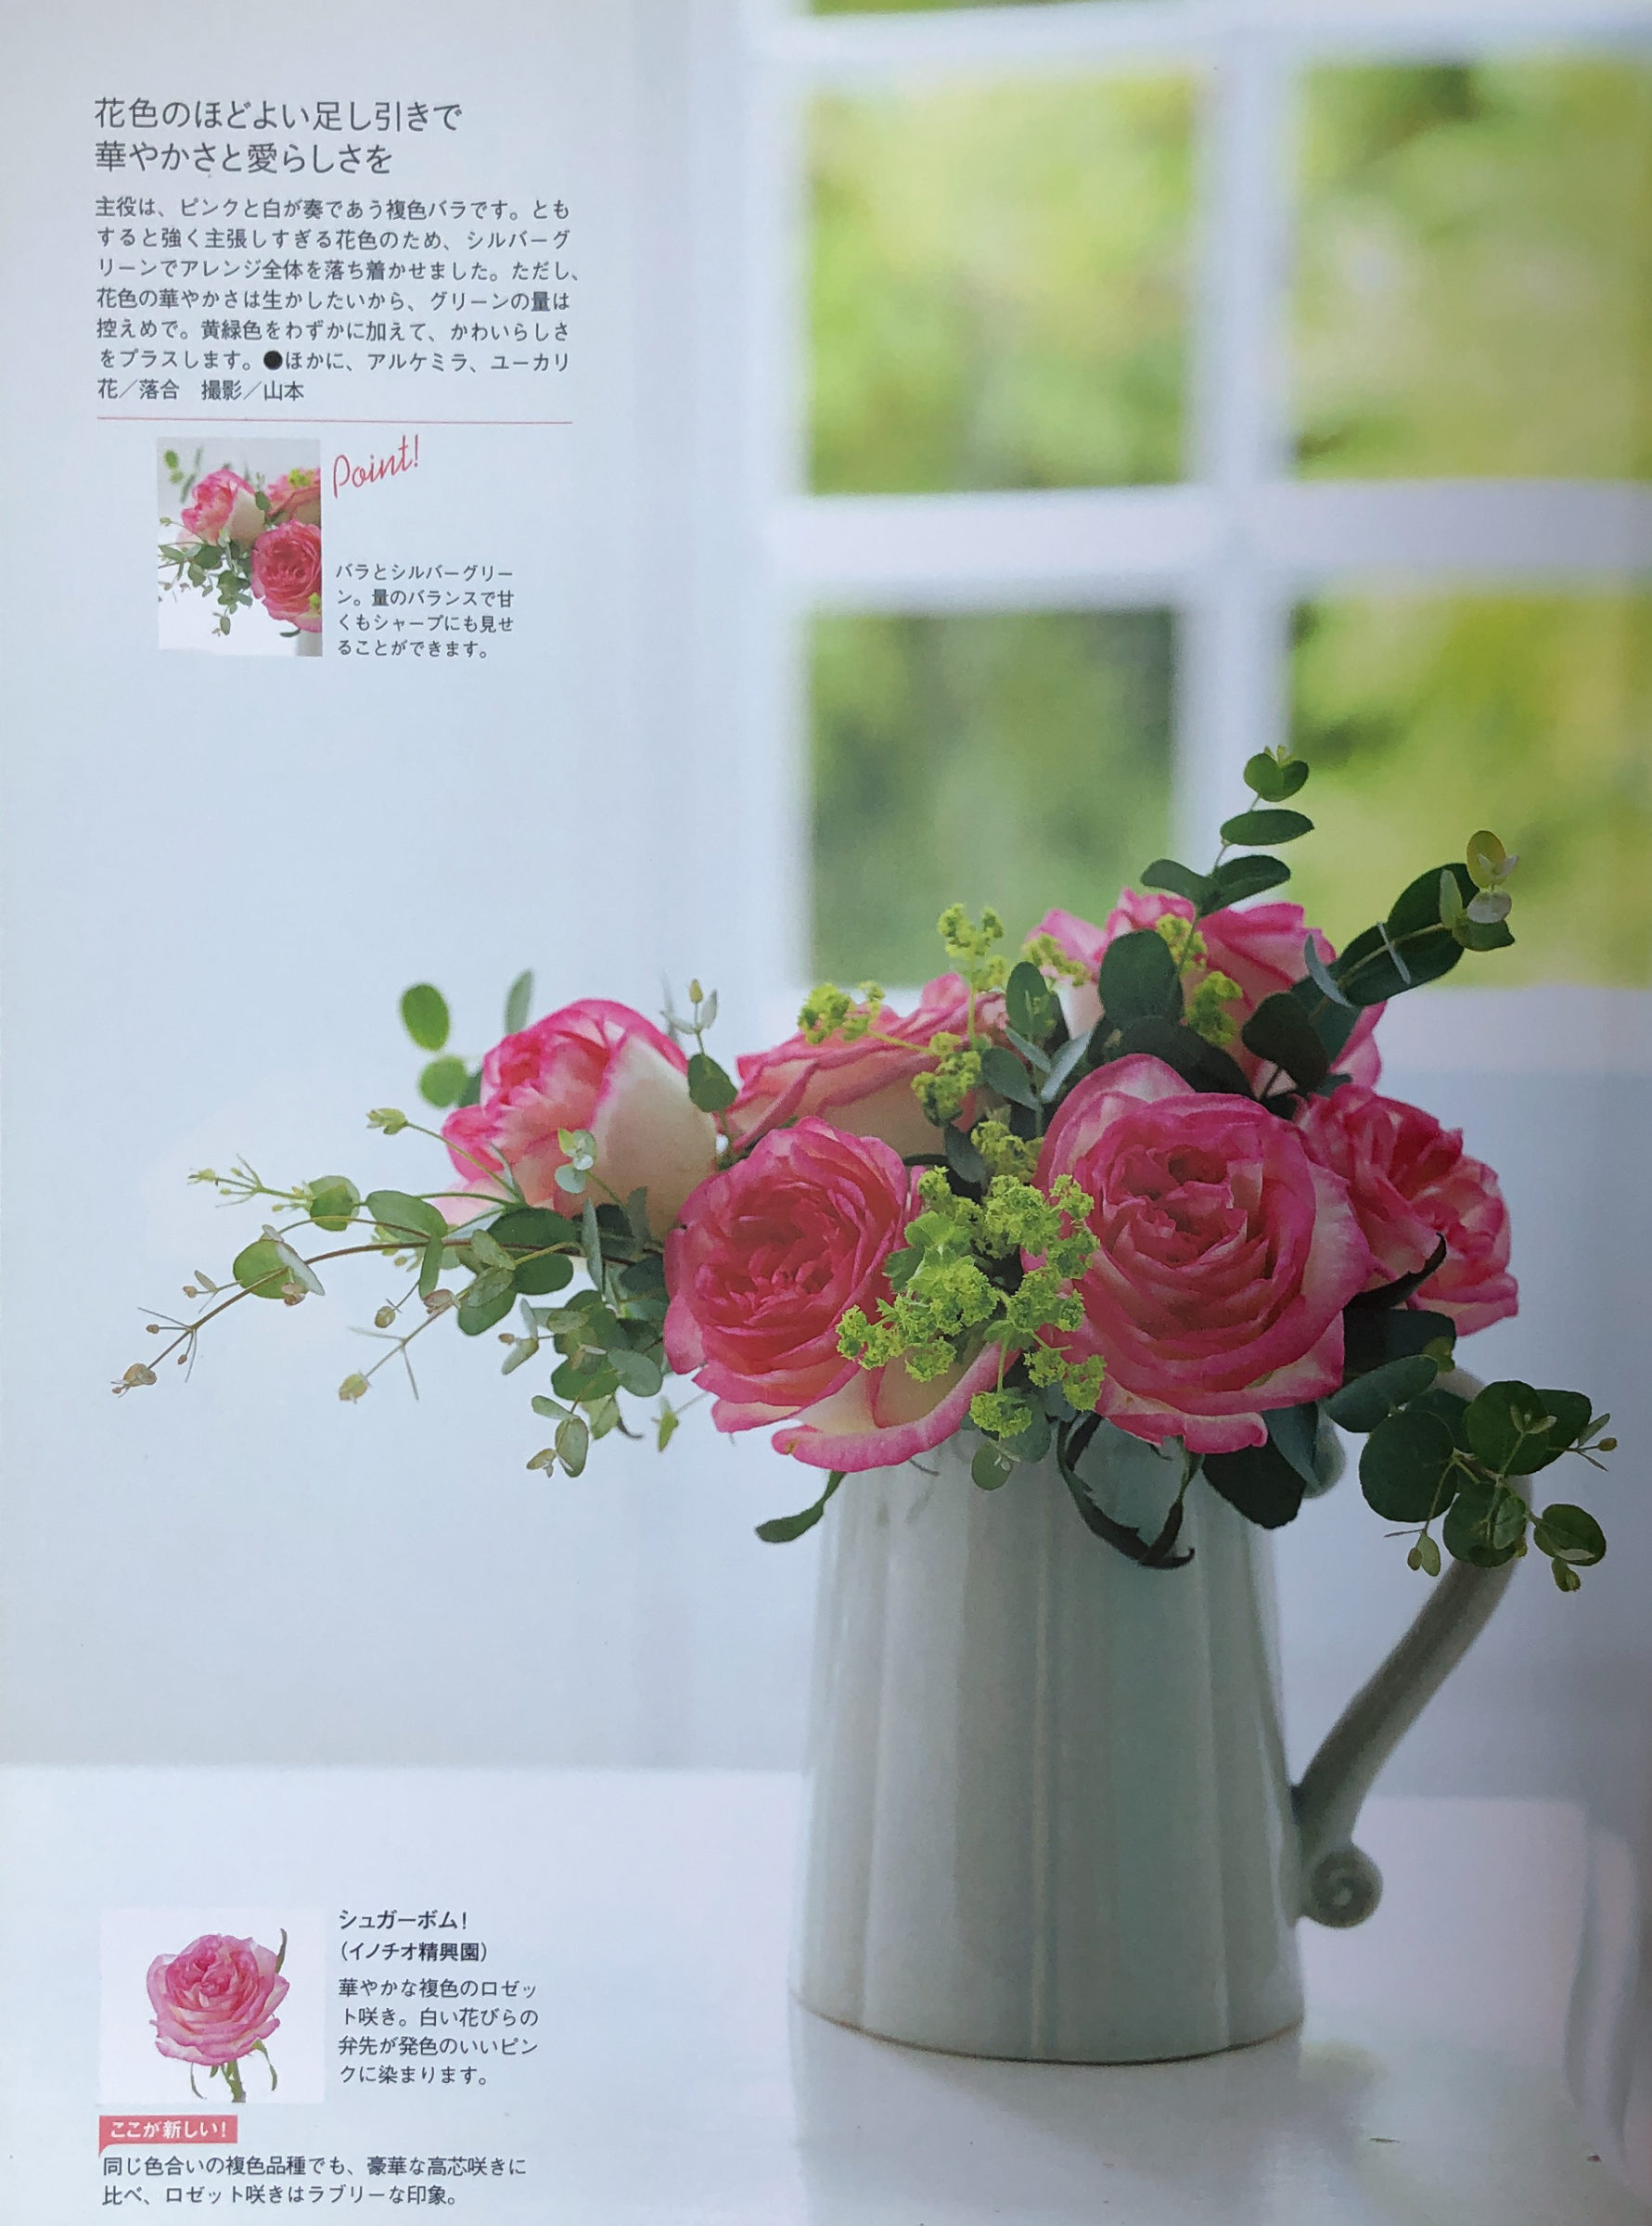 花色で魅せる新しいバラの共演 「複色ピンク」 P153 ピンクと白が奏であう複色バラシュガーボムを ピッチャーにあしらいました。 花・落合惠美　撮影・山本正樹